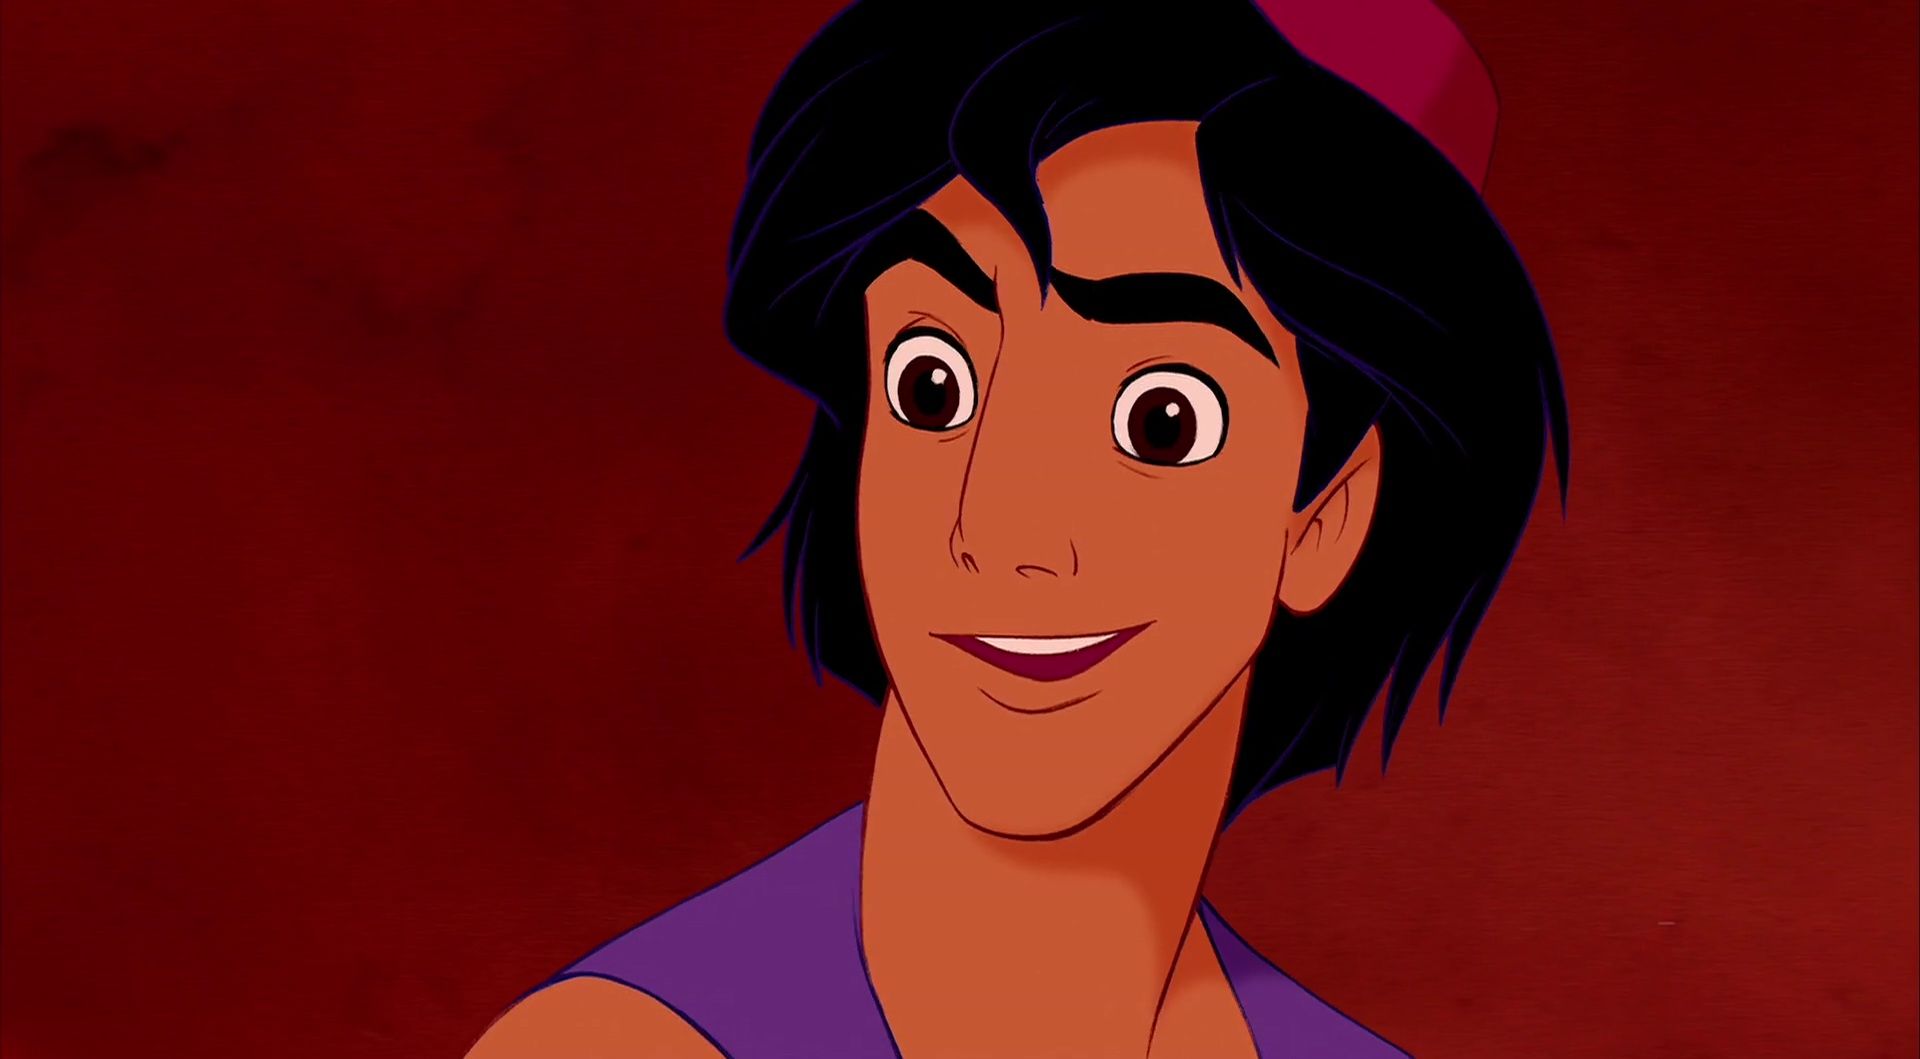 De prendre la vie d'Aladdin